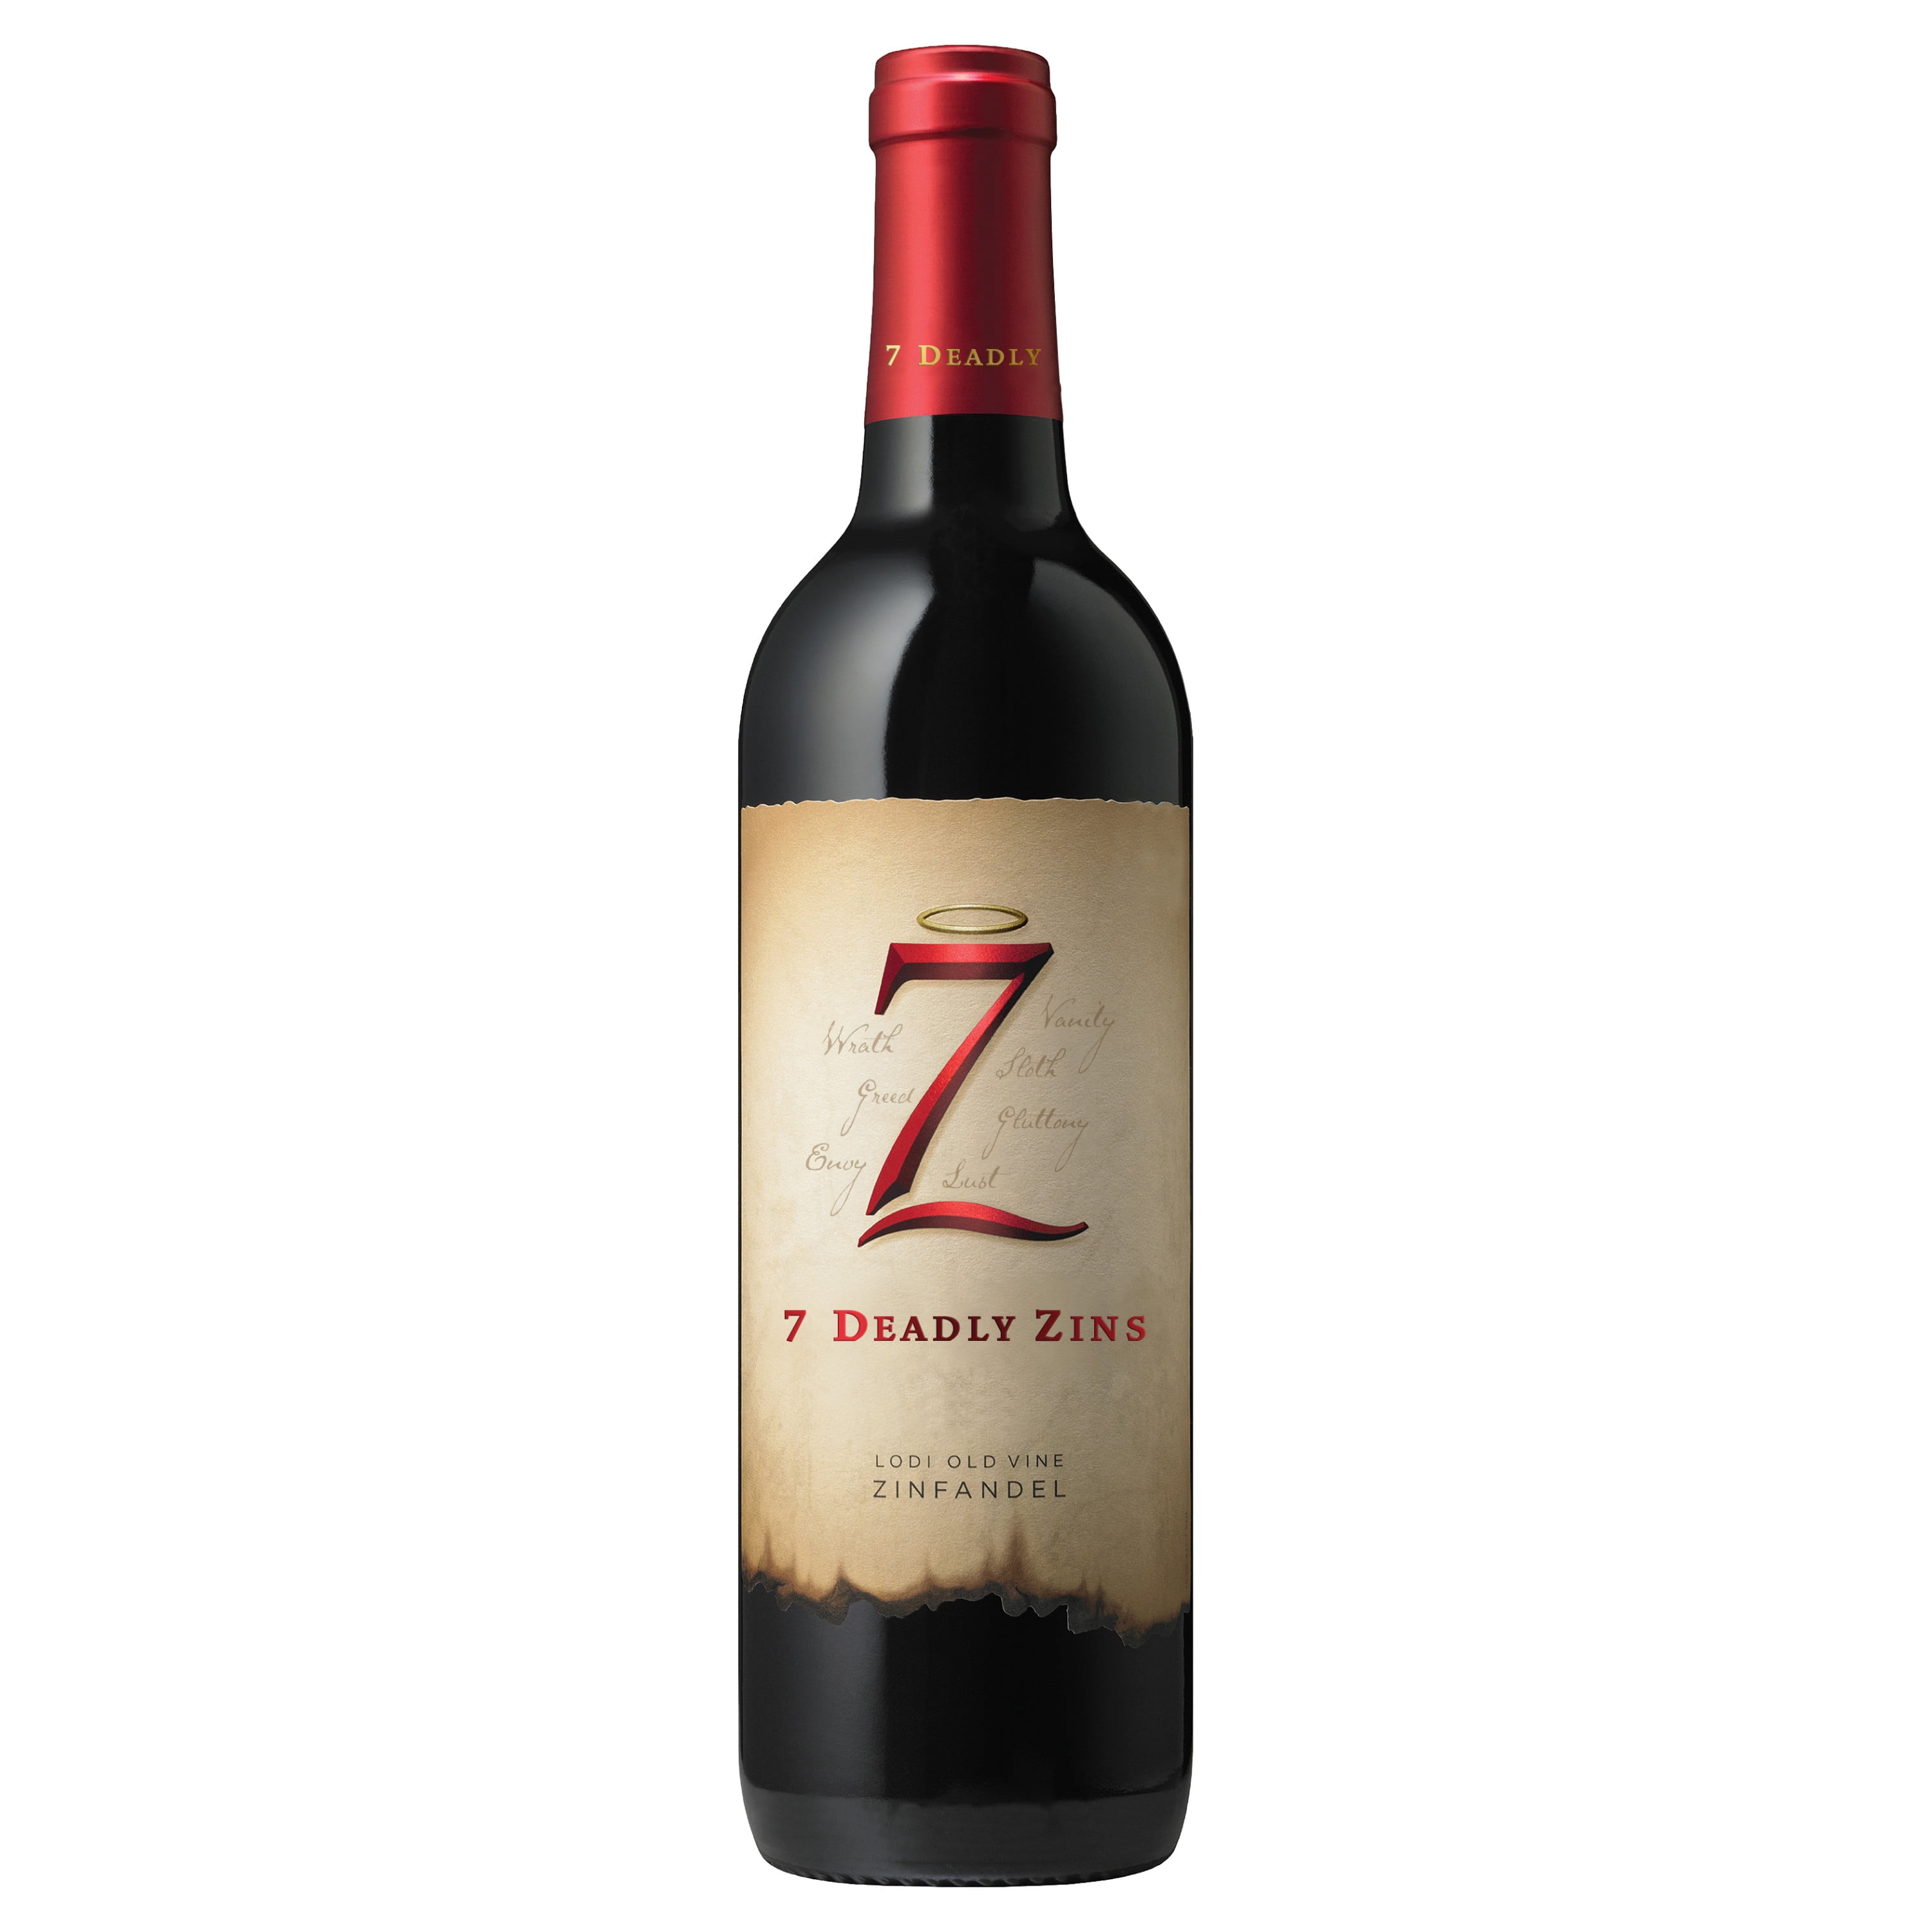 7 Deadly Zins Zinfandel Red Wine 750ml, 2017 California - Walmart.com